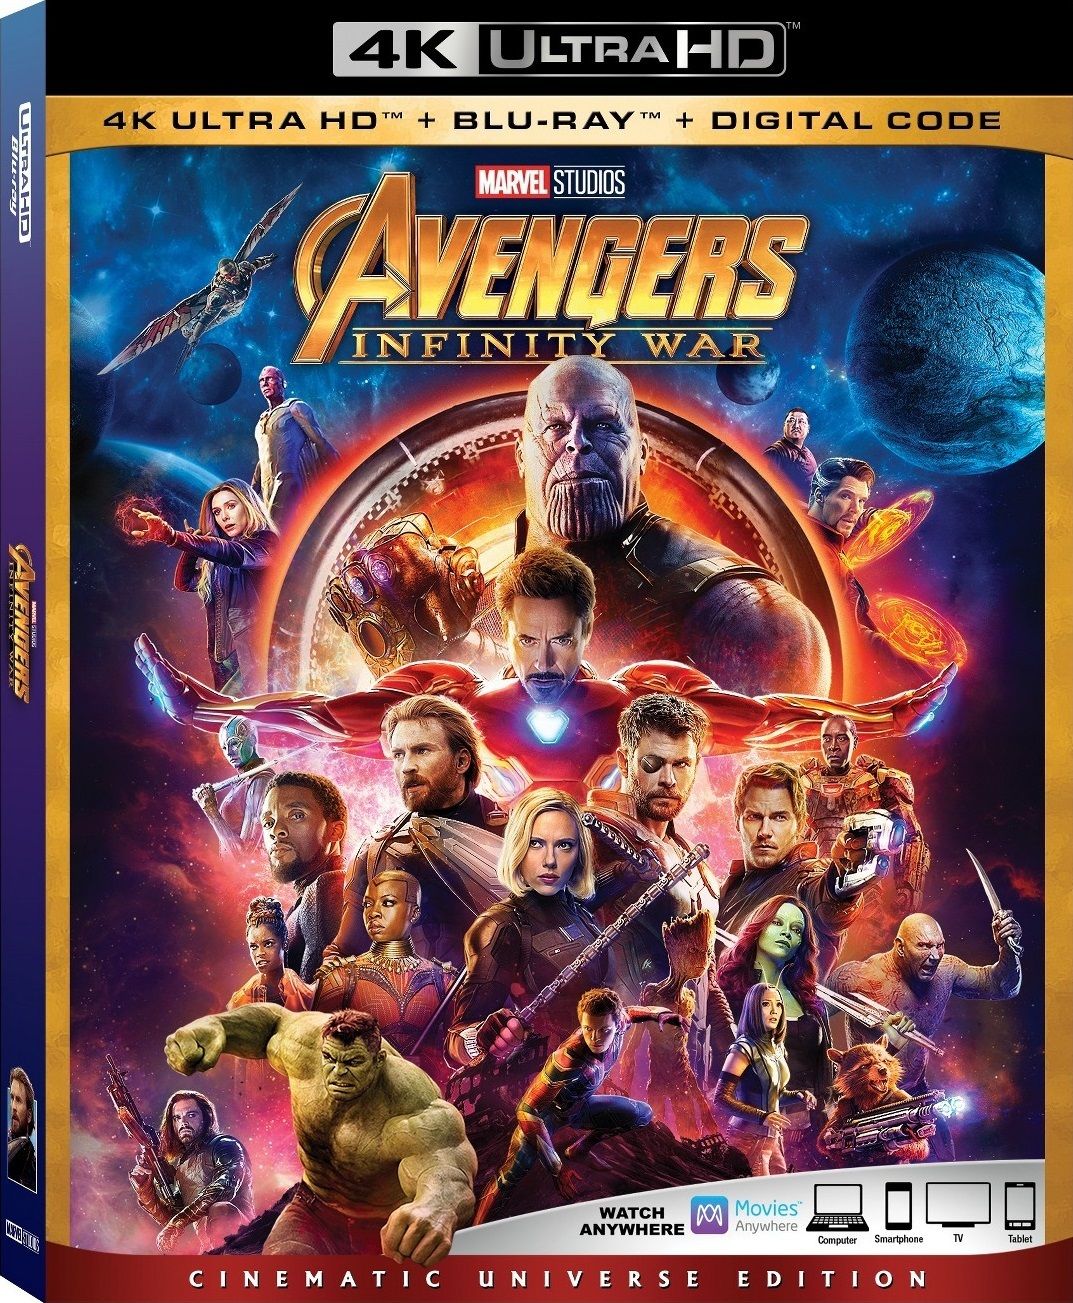 复仇者联盟3 [美版UHD原盘中字 DIY THD次世代国语/国配简繁特效字幕/双语特效字幕] Avengers Infinity War 2018 2160p UHD BluRay TrueHD 7 1-THDBST@HDSky[64.43GB]-1.jpg